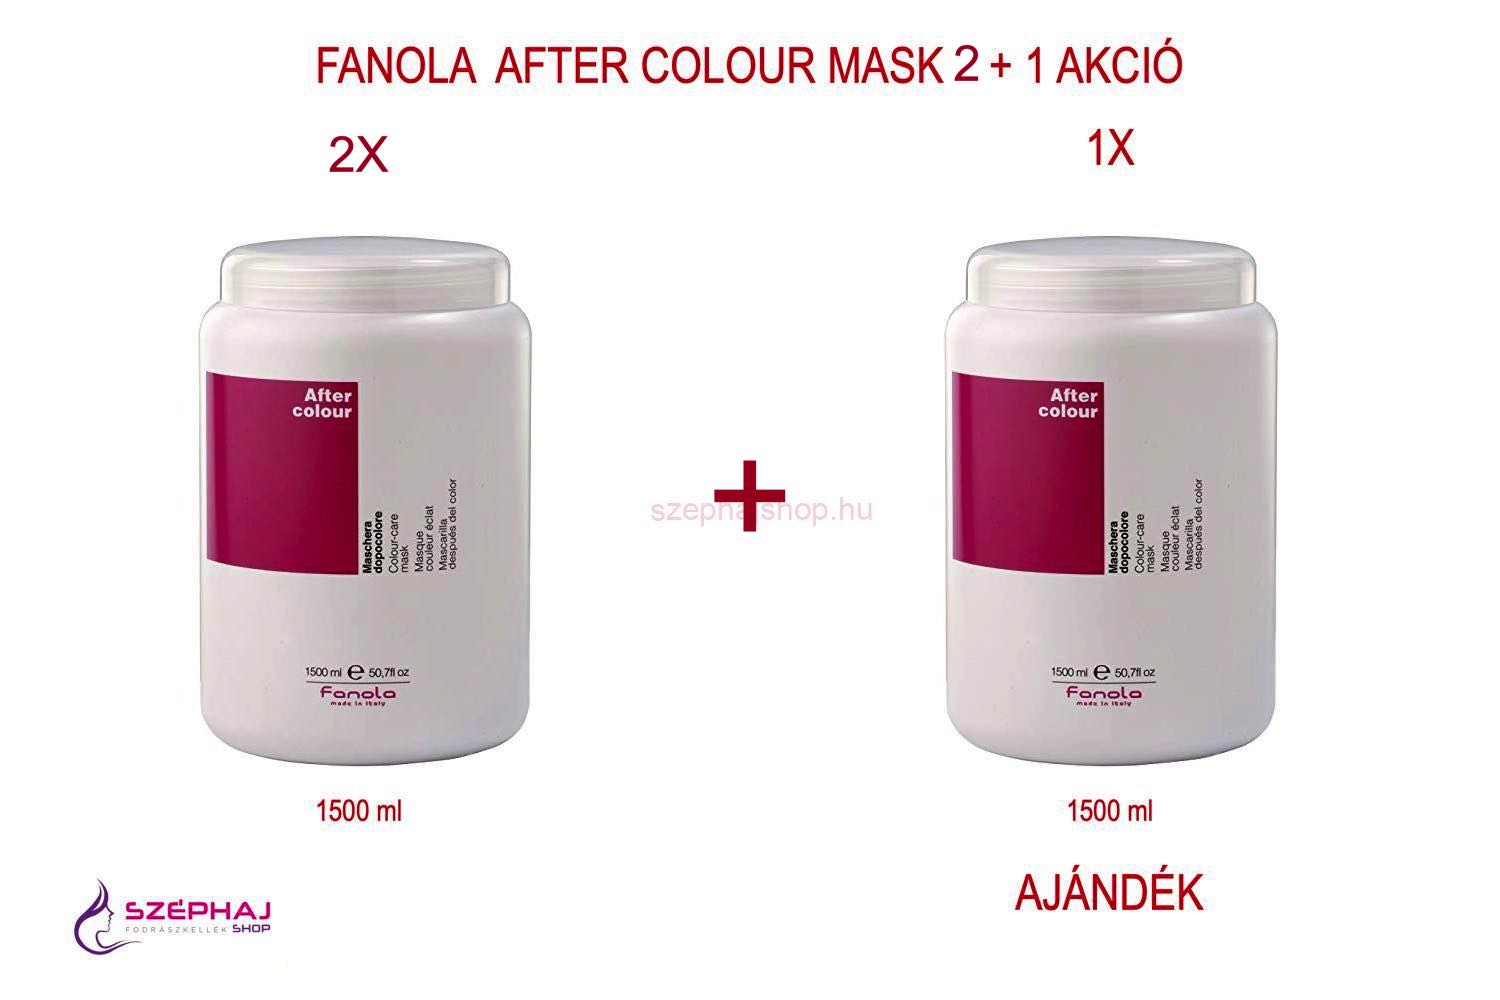 FANOLA After Colour Mask 1500ml 2+1 AKCIÓ